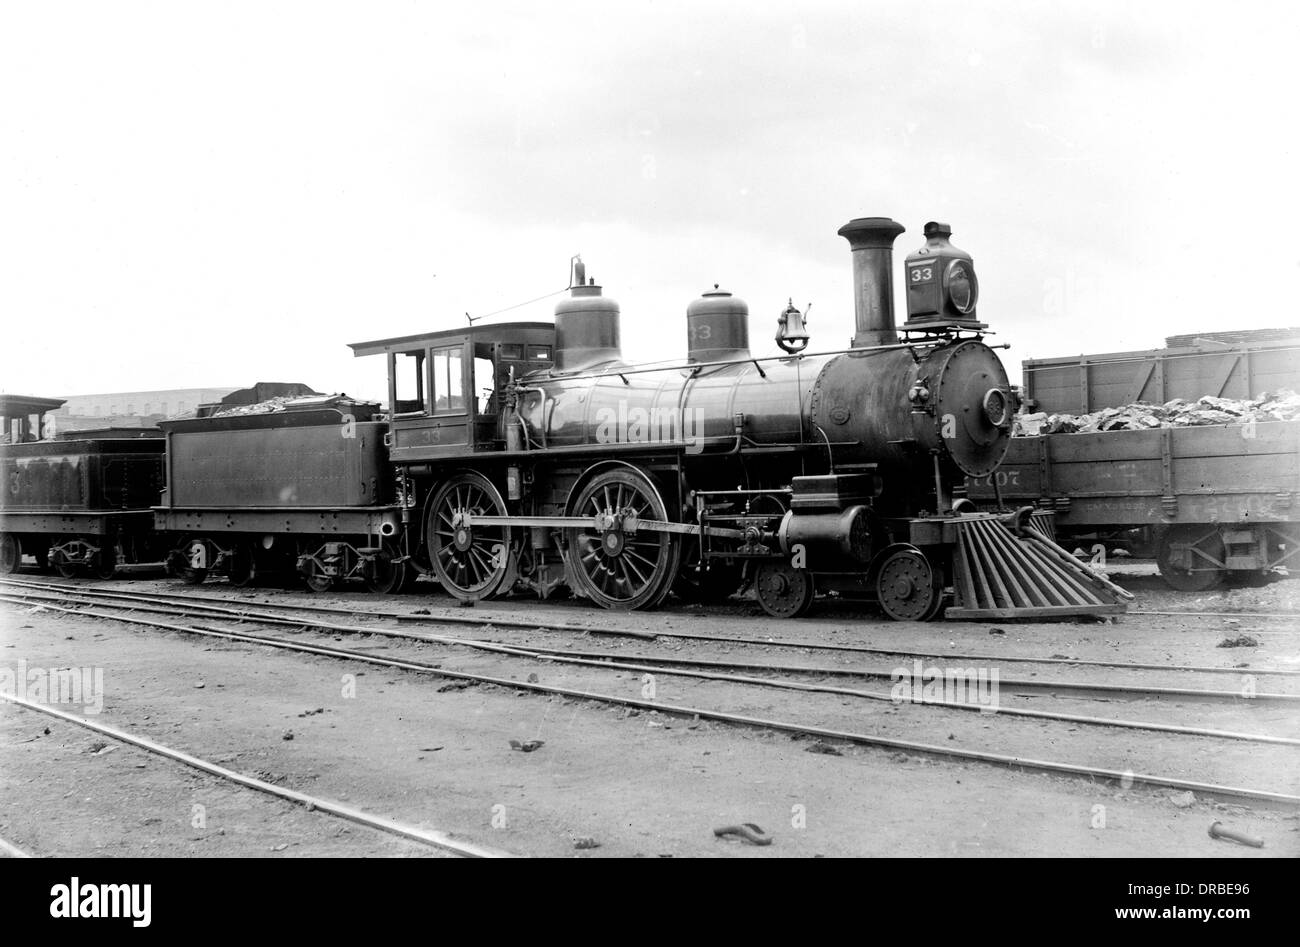 Louisville und Nashville Railroad 4-4-0 "amerikanische" Dampf Lok Nr. 33. Fotografiert in Nashville, Kentucky, USA im Jahre 1888. Stockfoto